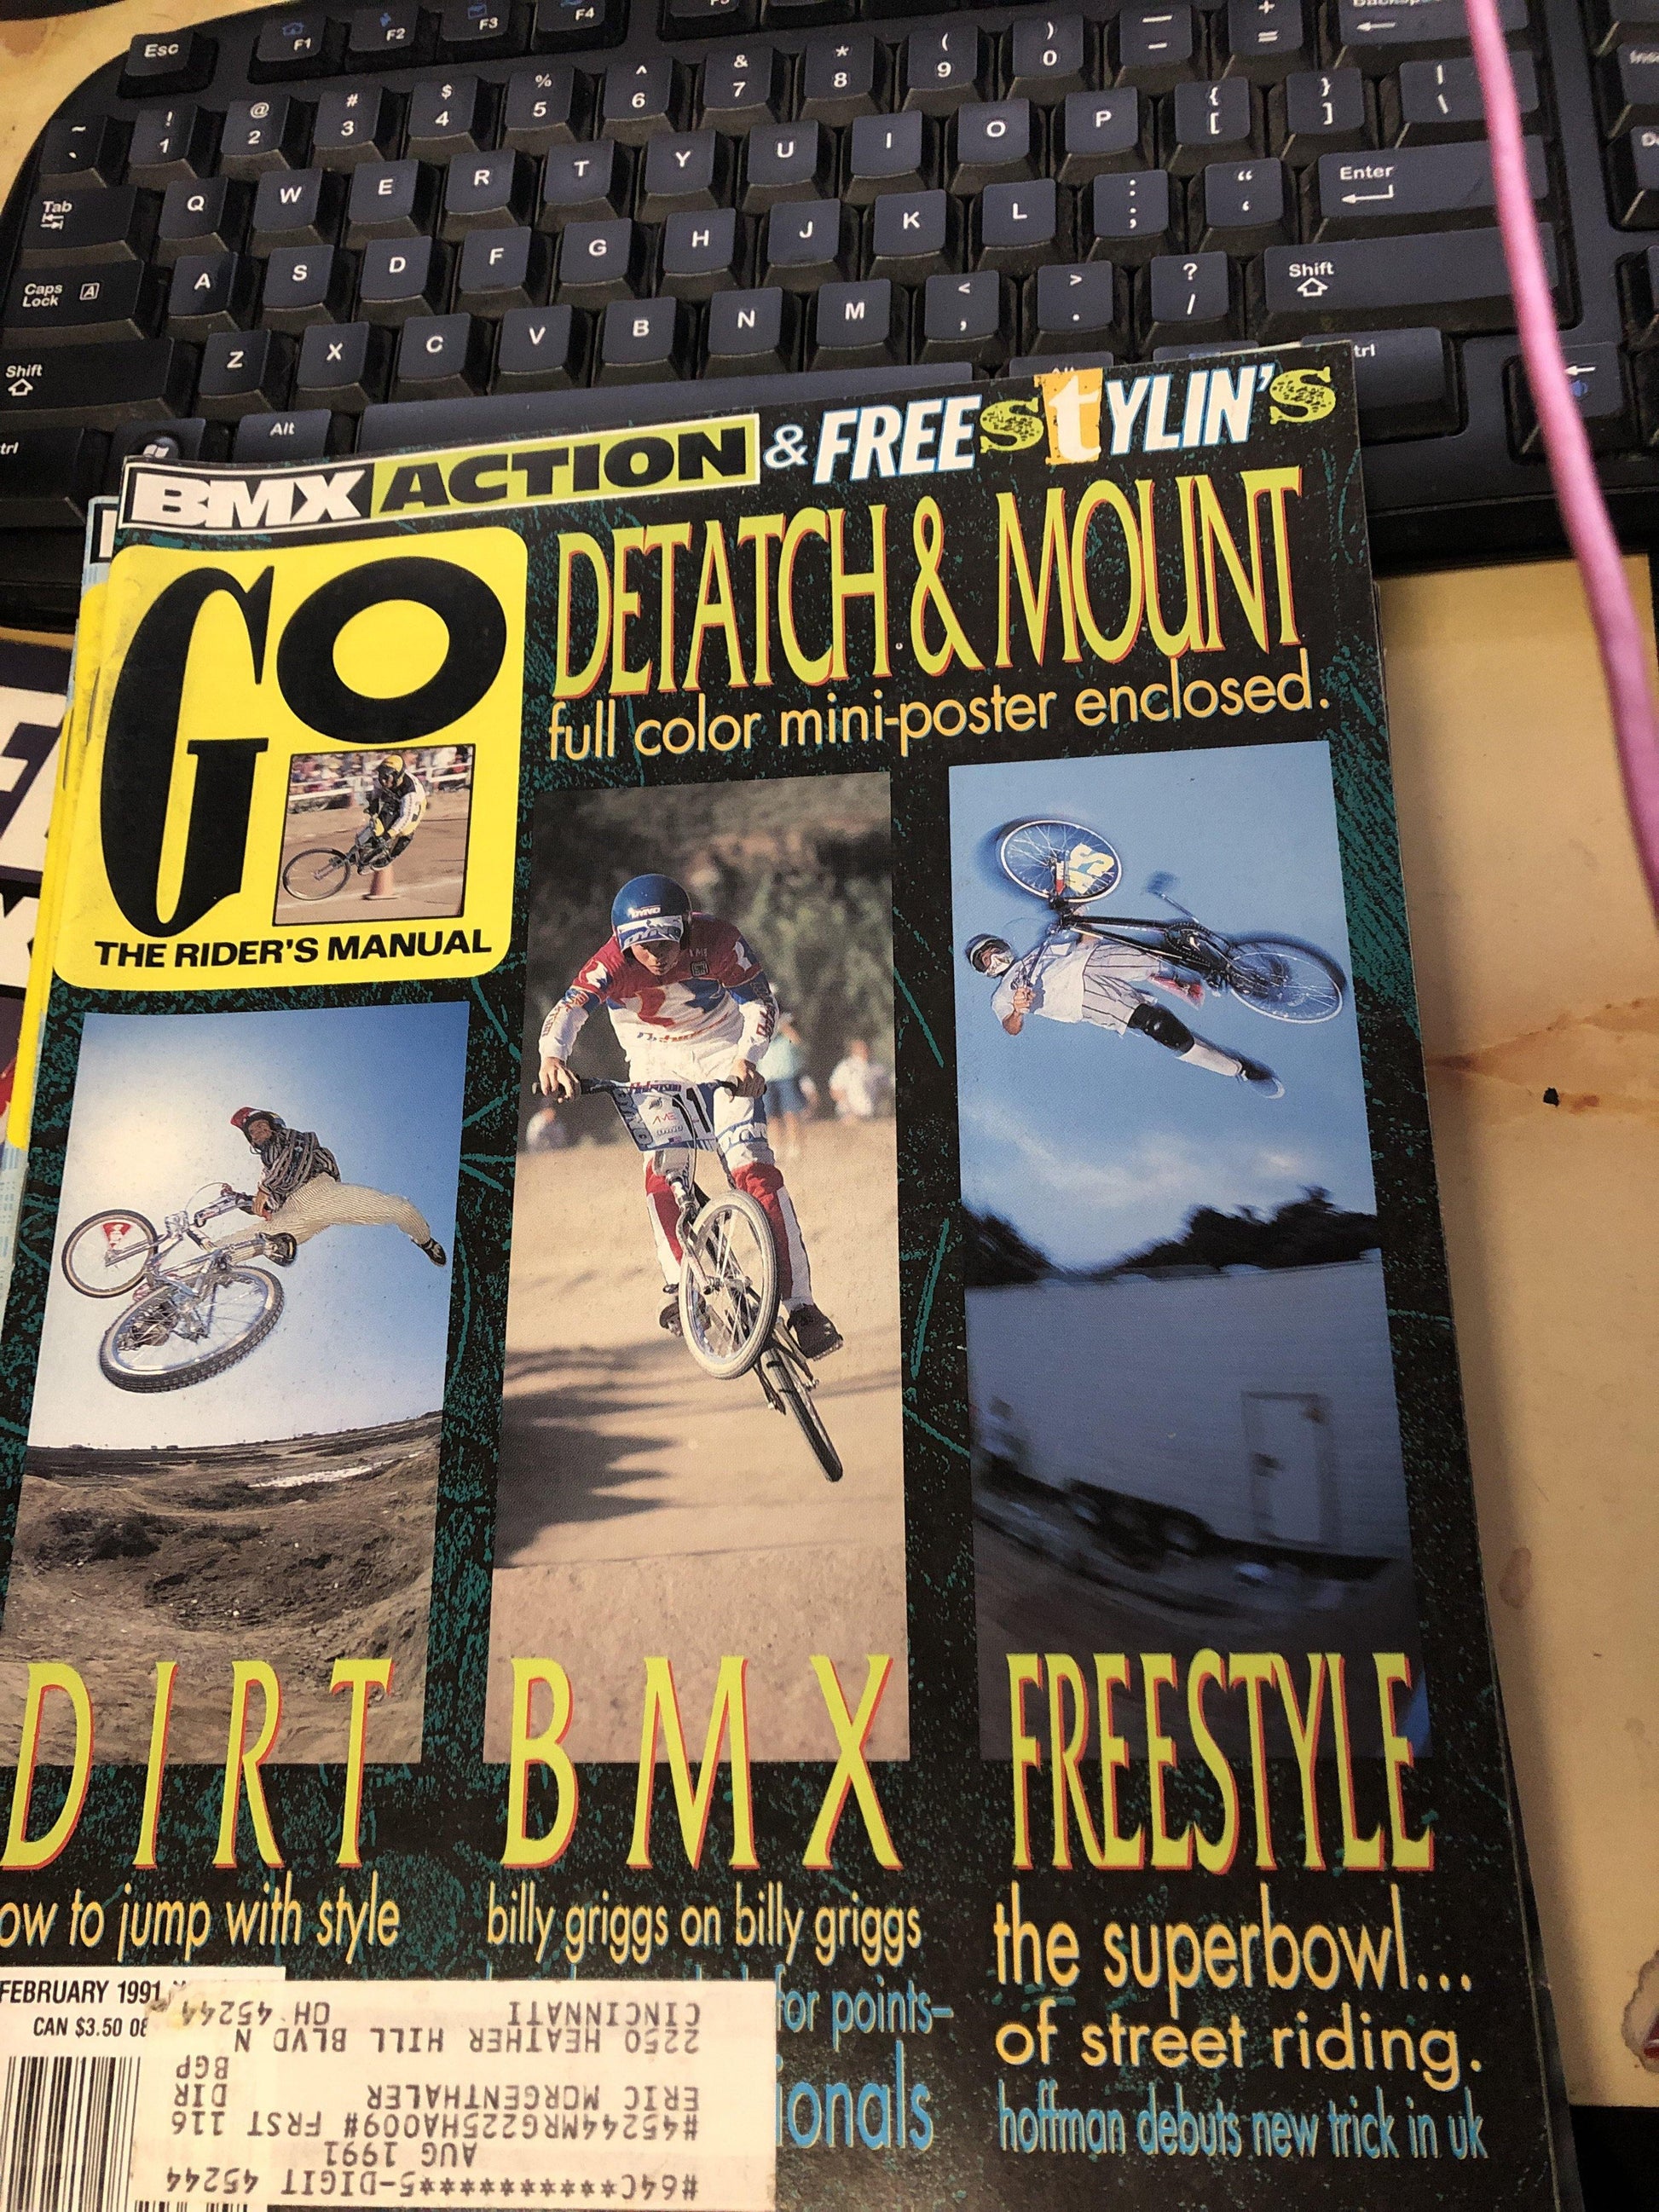 GO BMX Magazine 1991 back issues - POWERS BMX